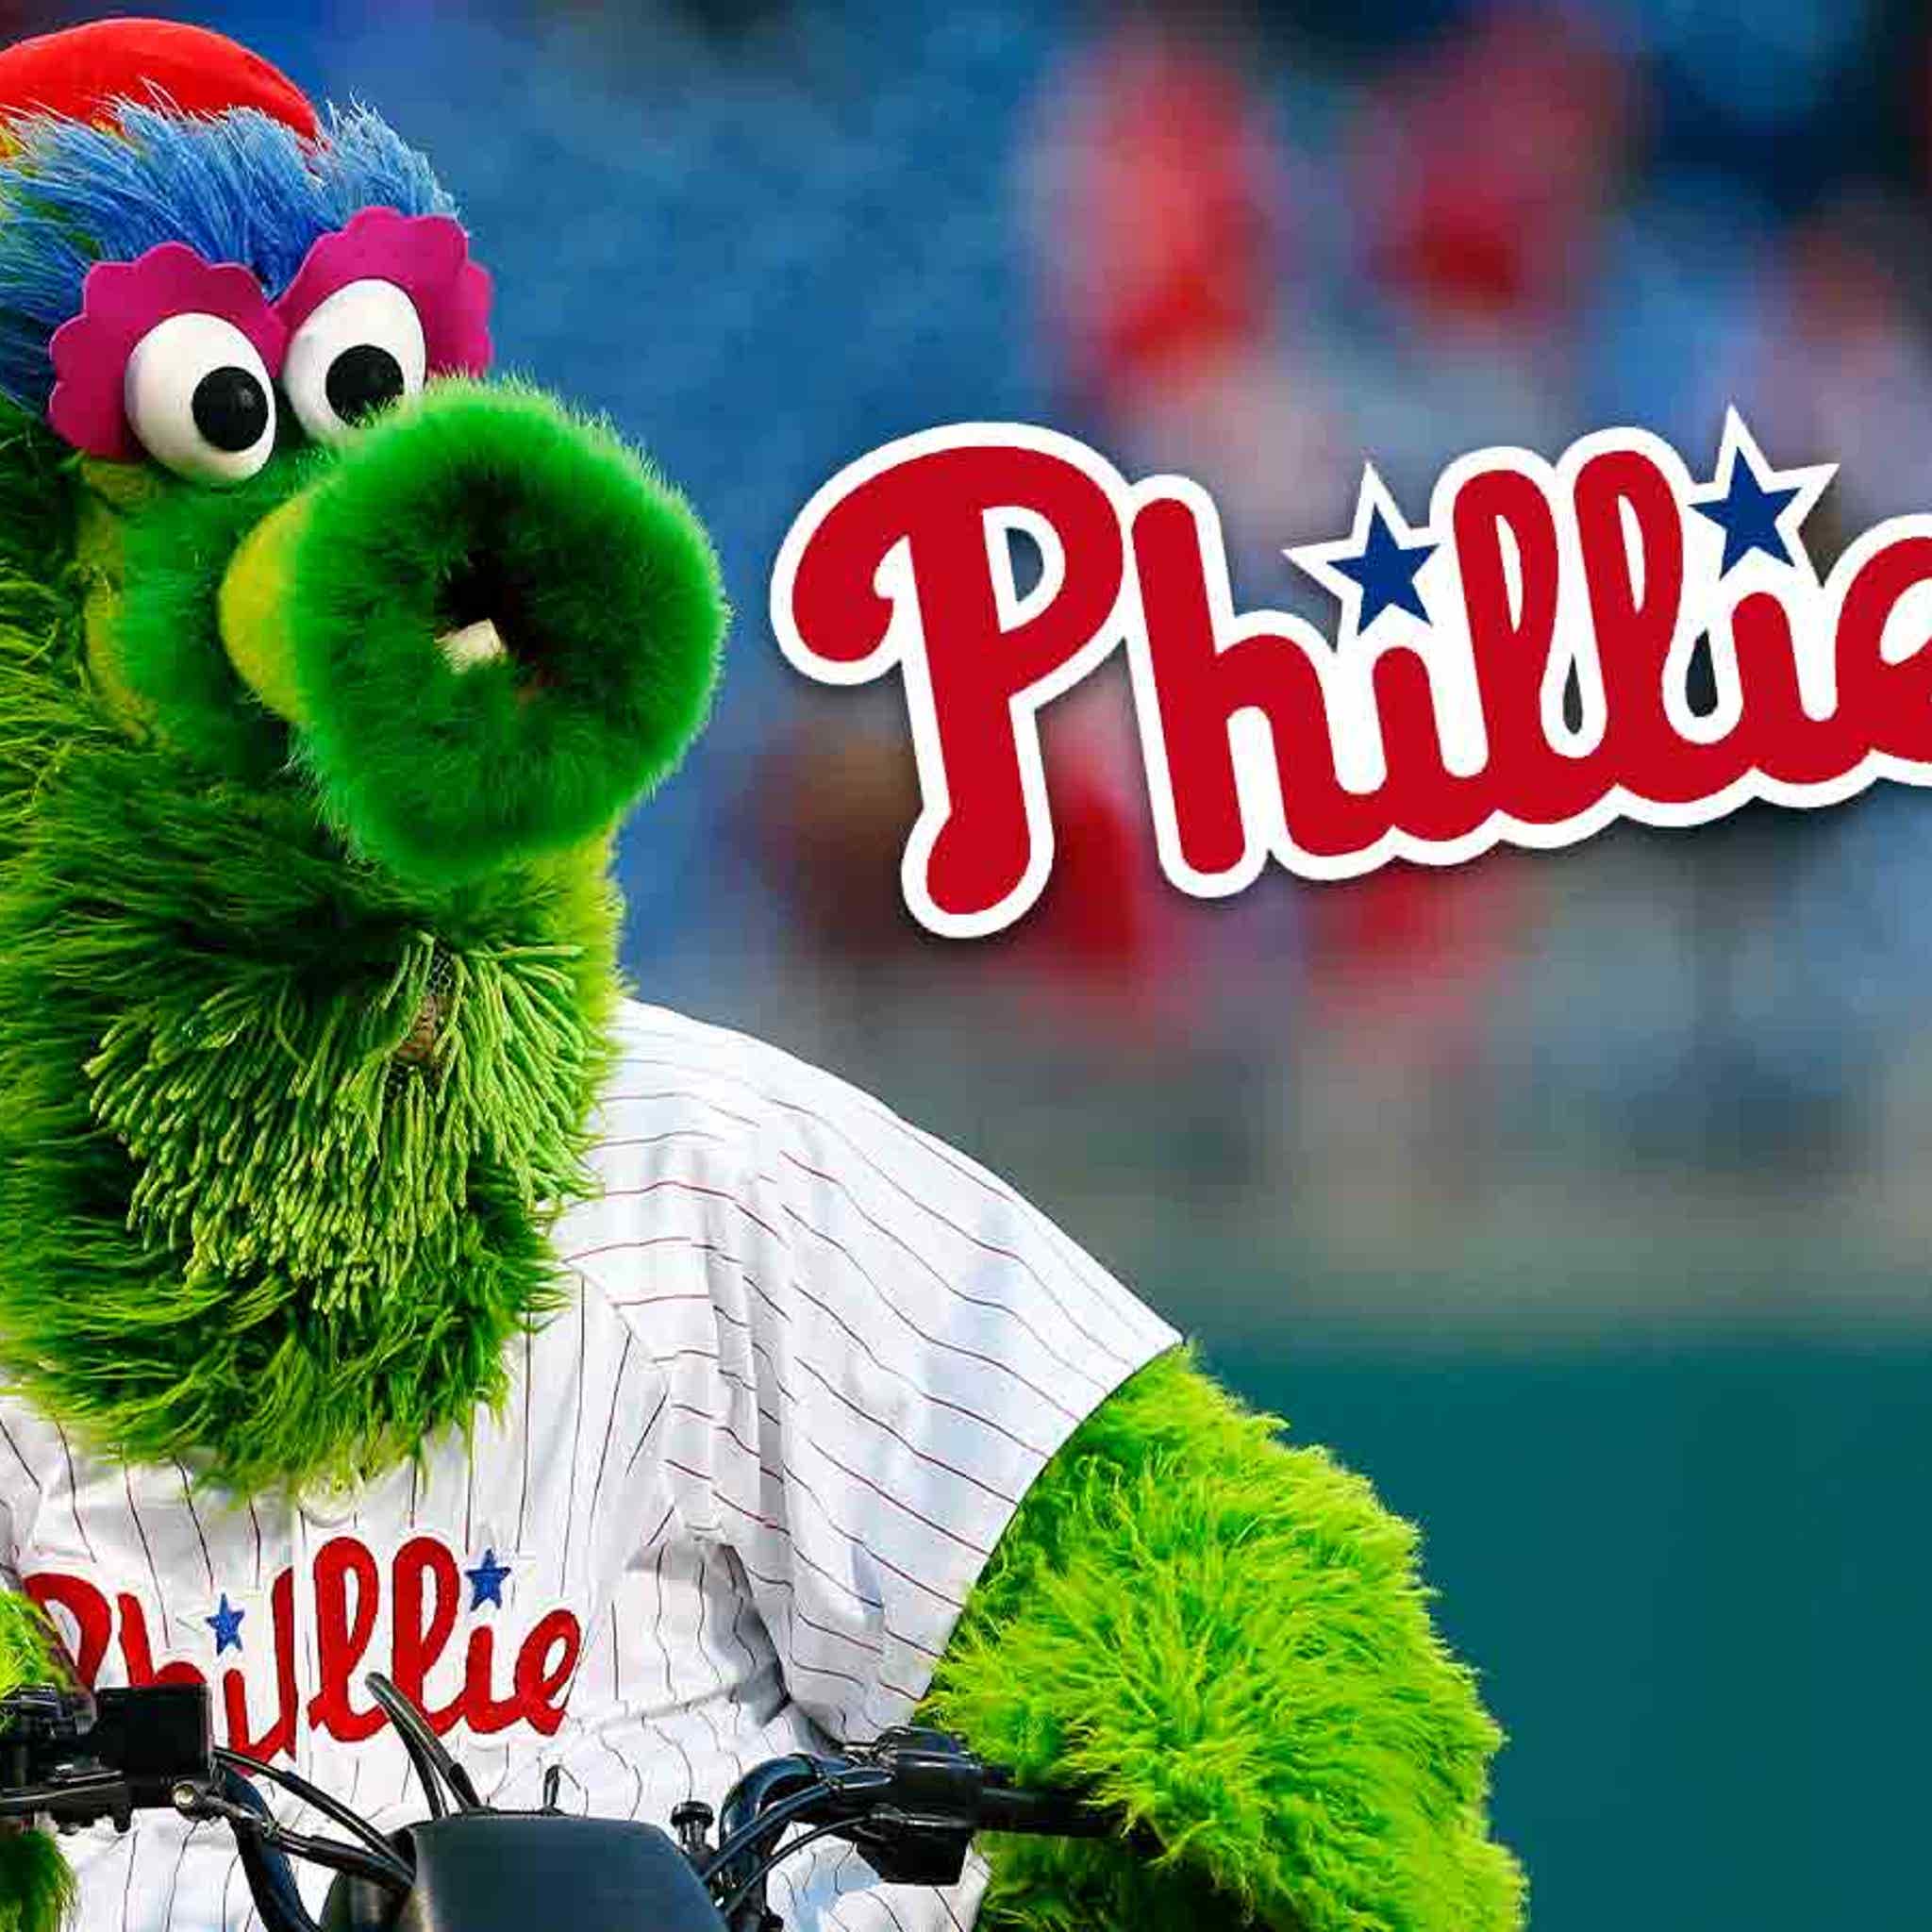 Phillies Mascot